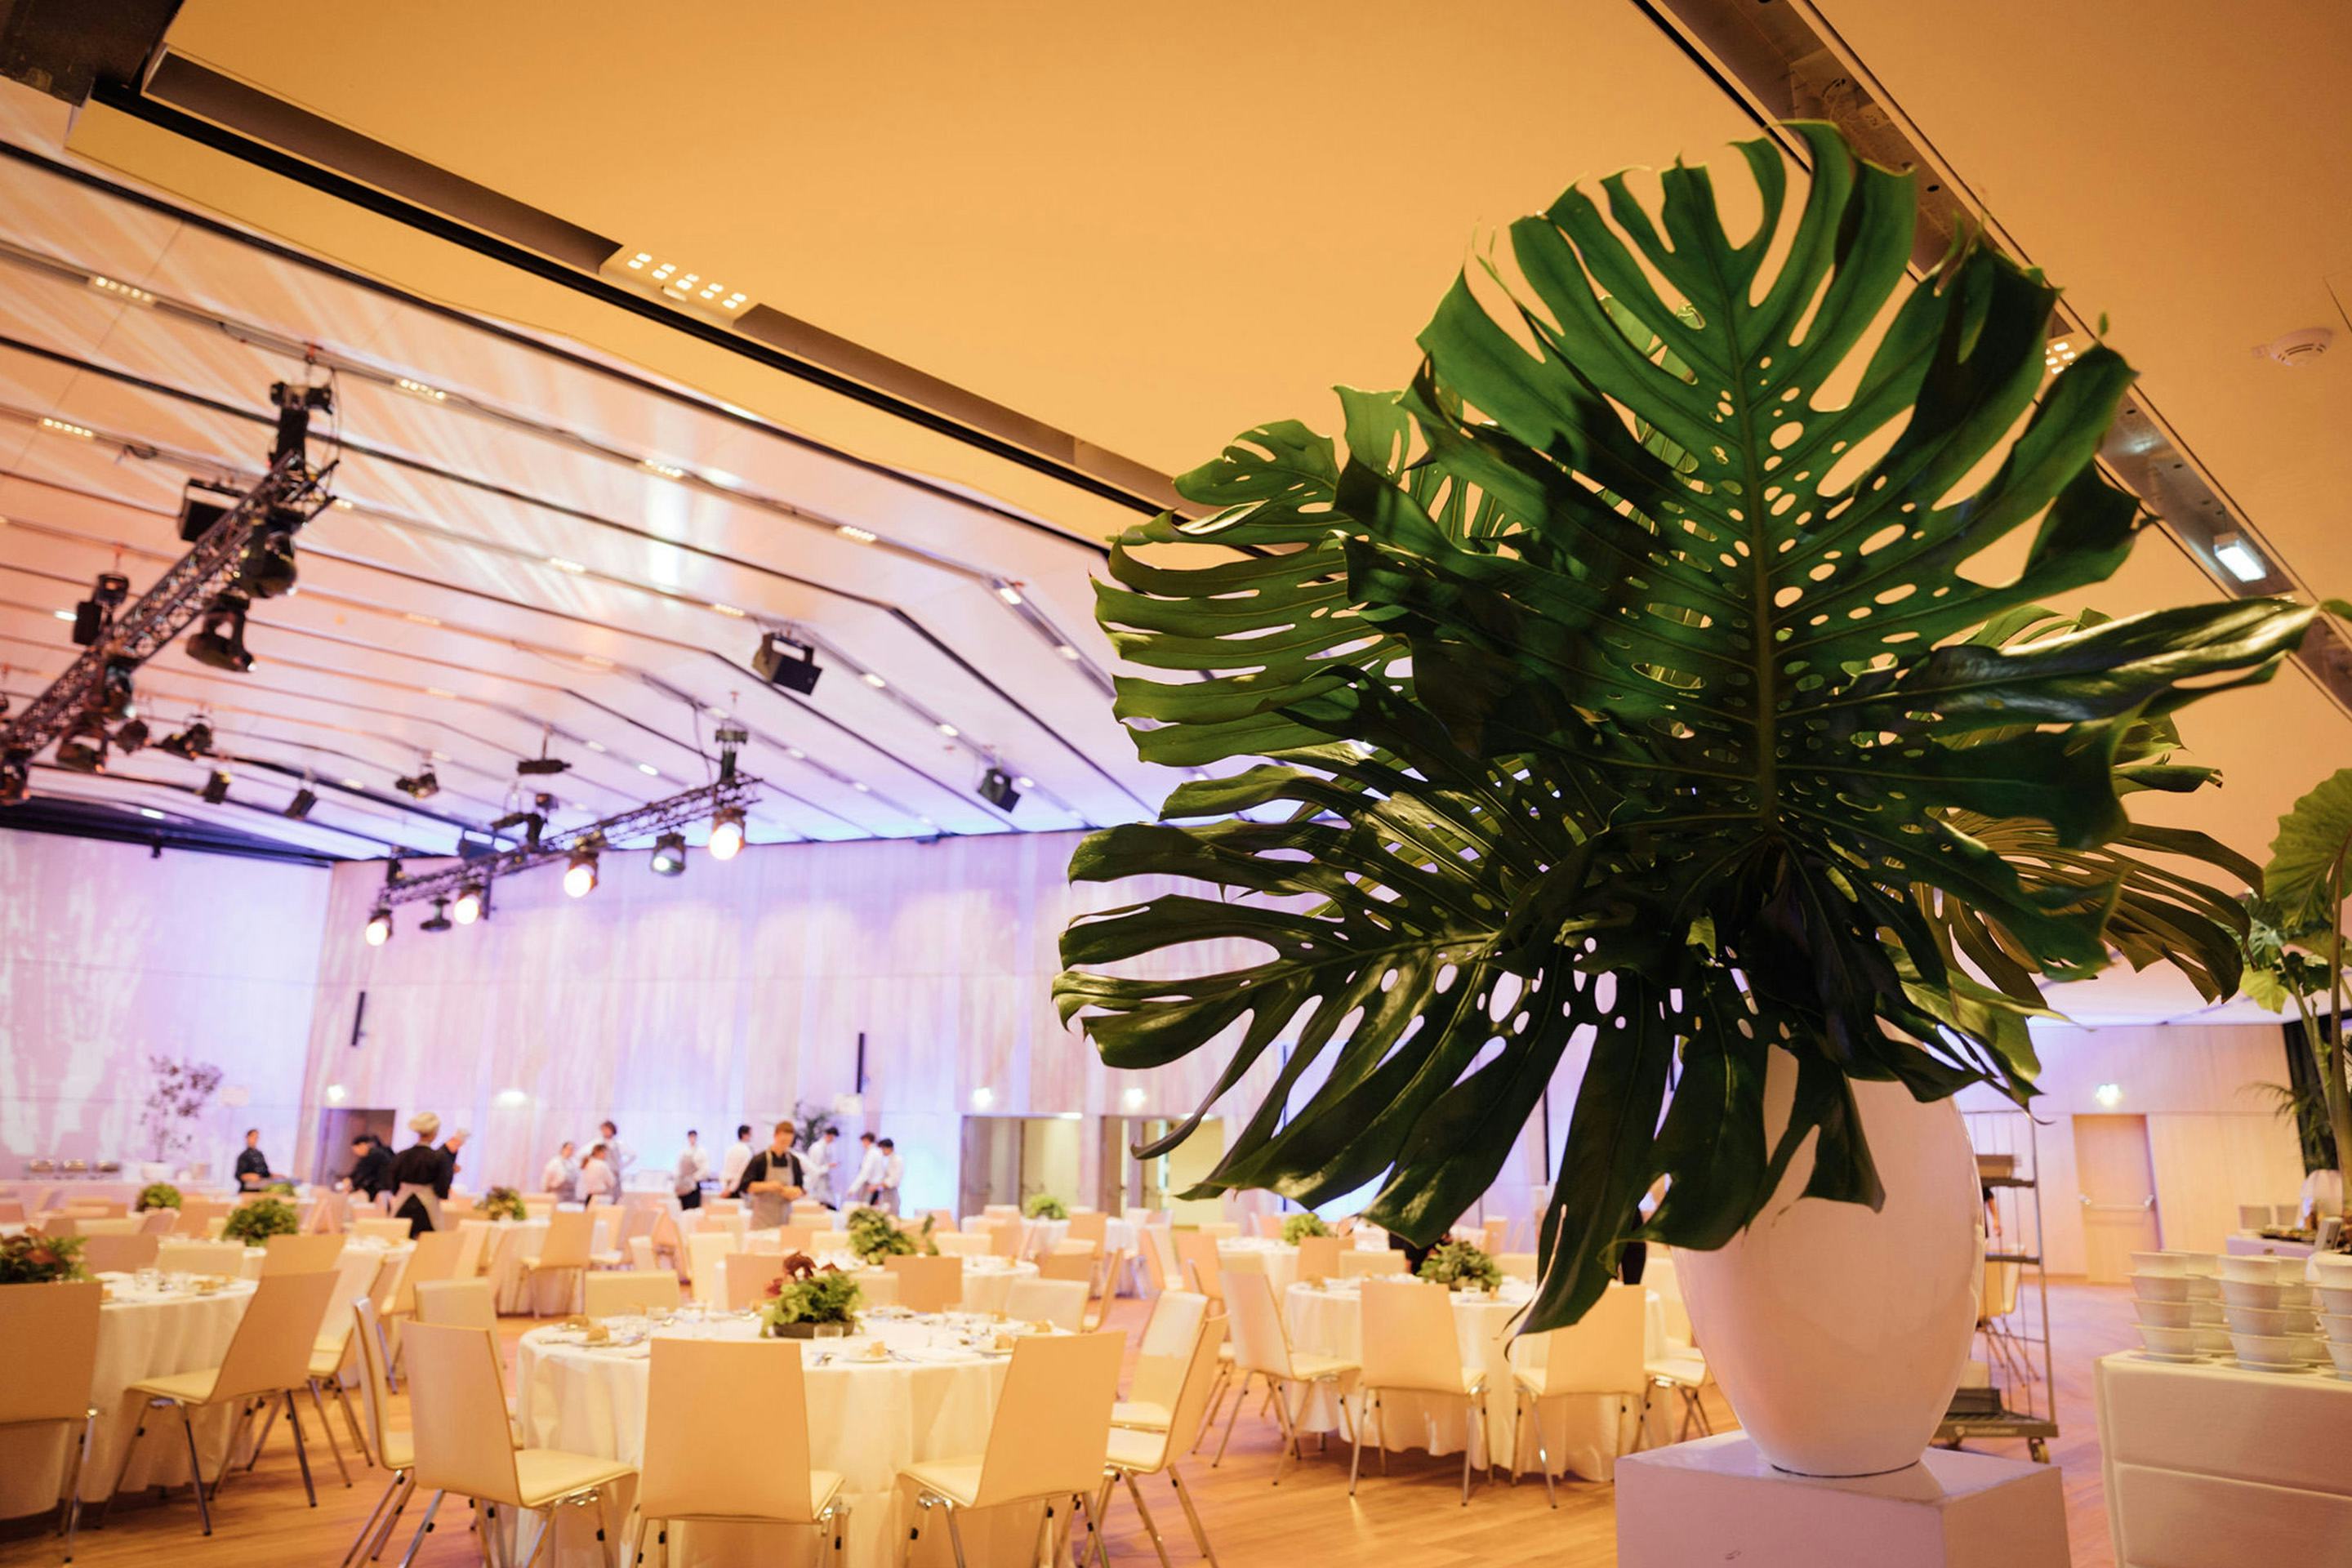 Foto: Runde Gala-Tische mit Stuehlen in einem Raum mit Holzboden und einigen Menschen, große Pflanze